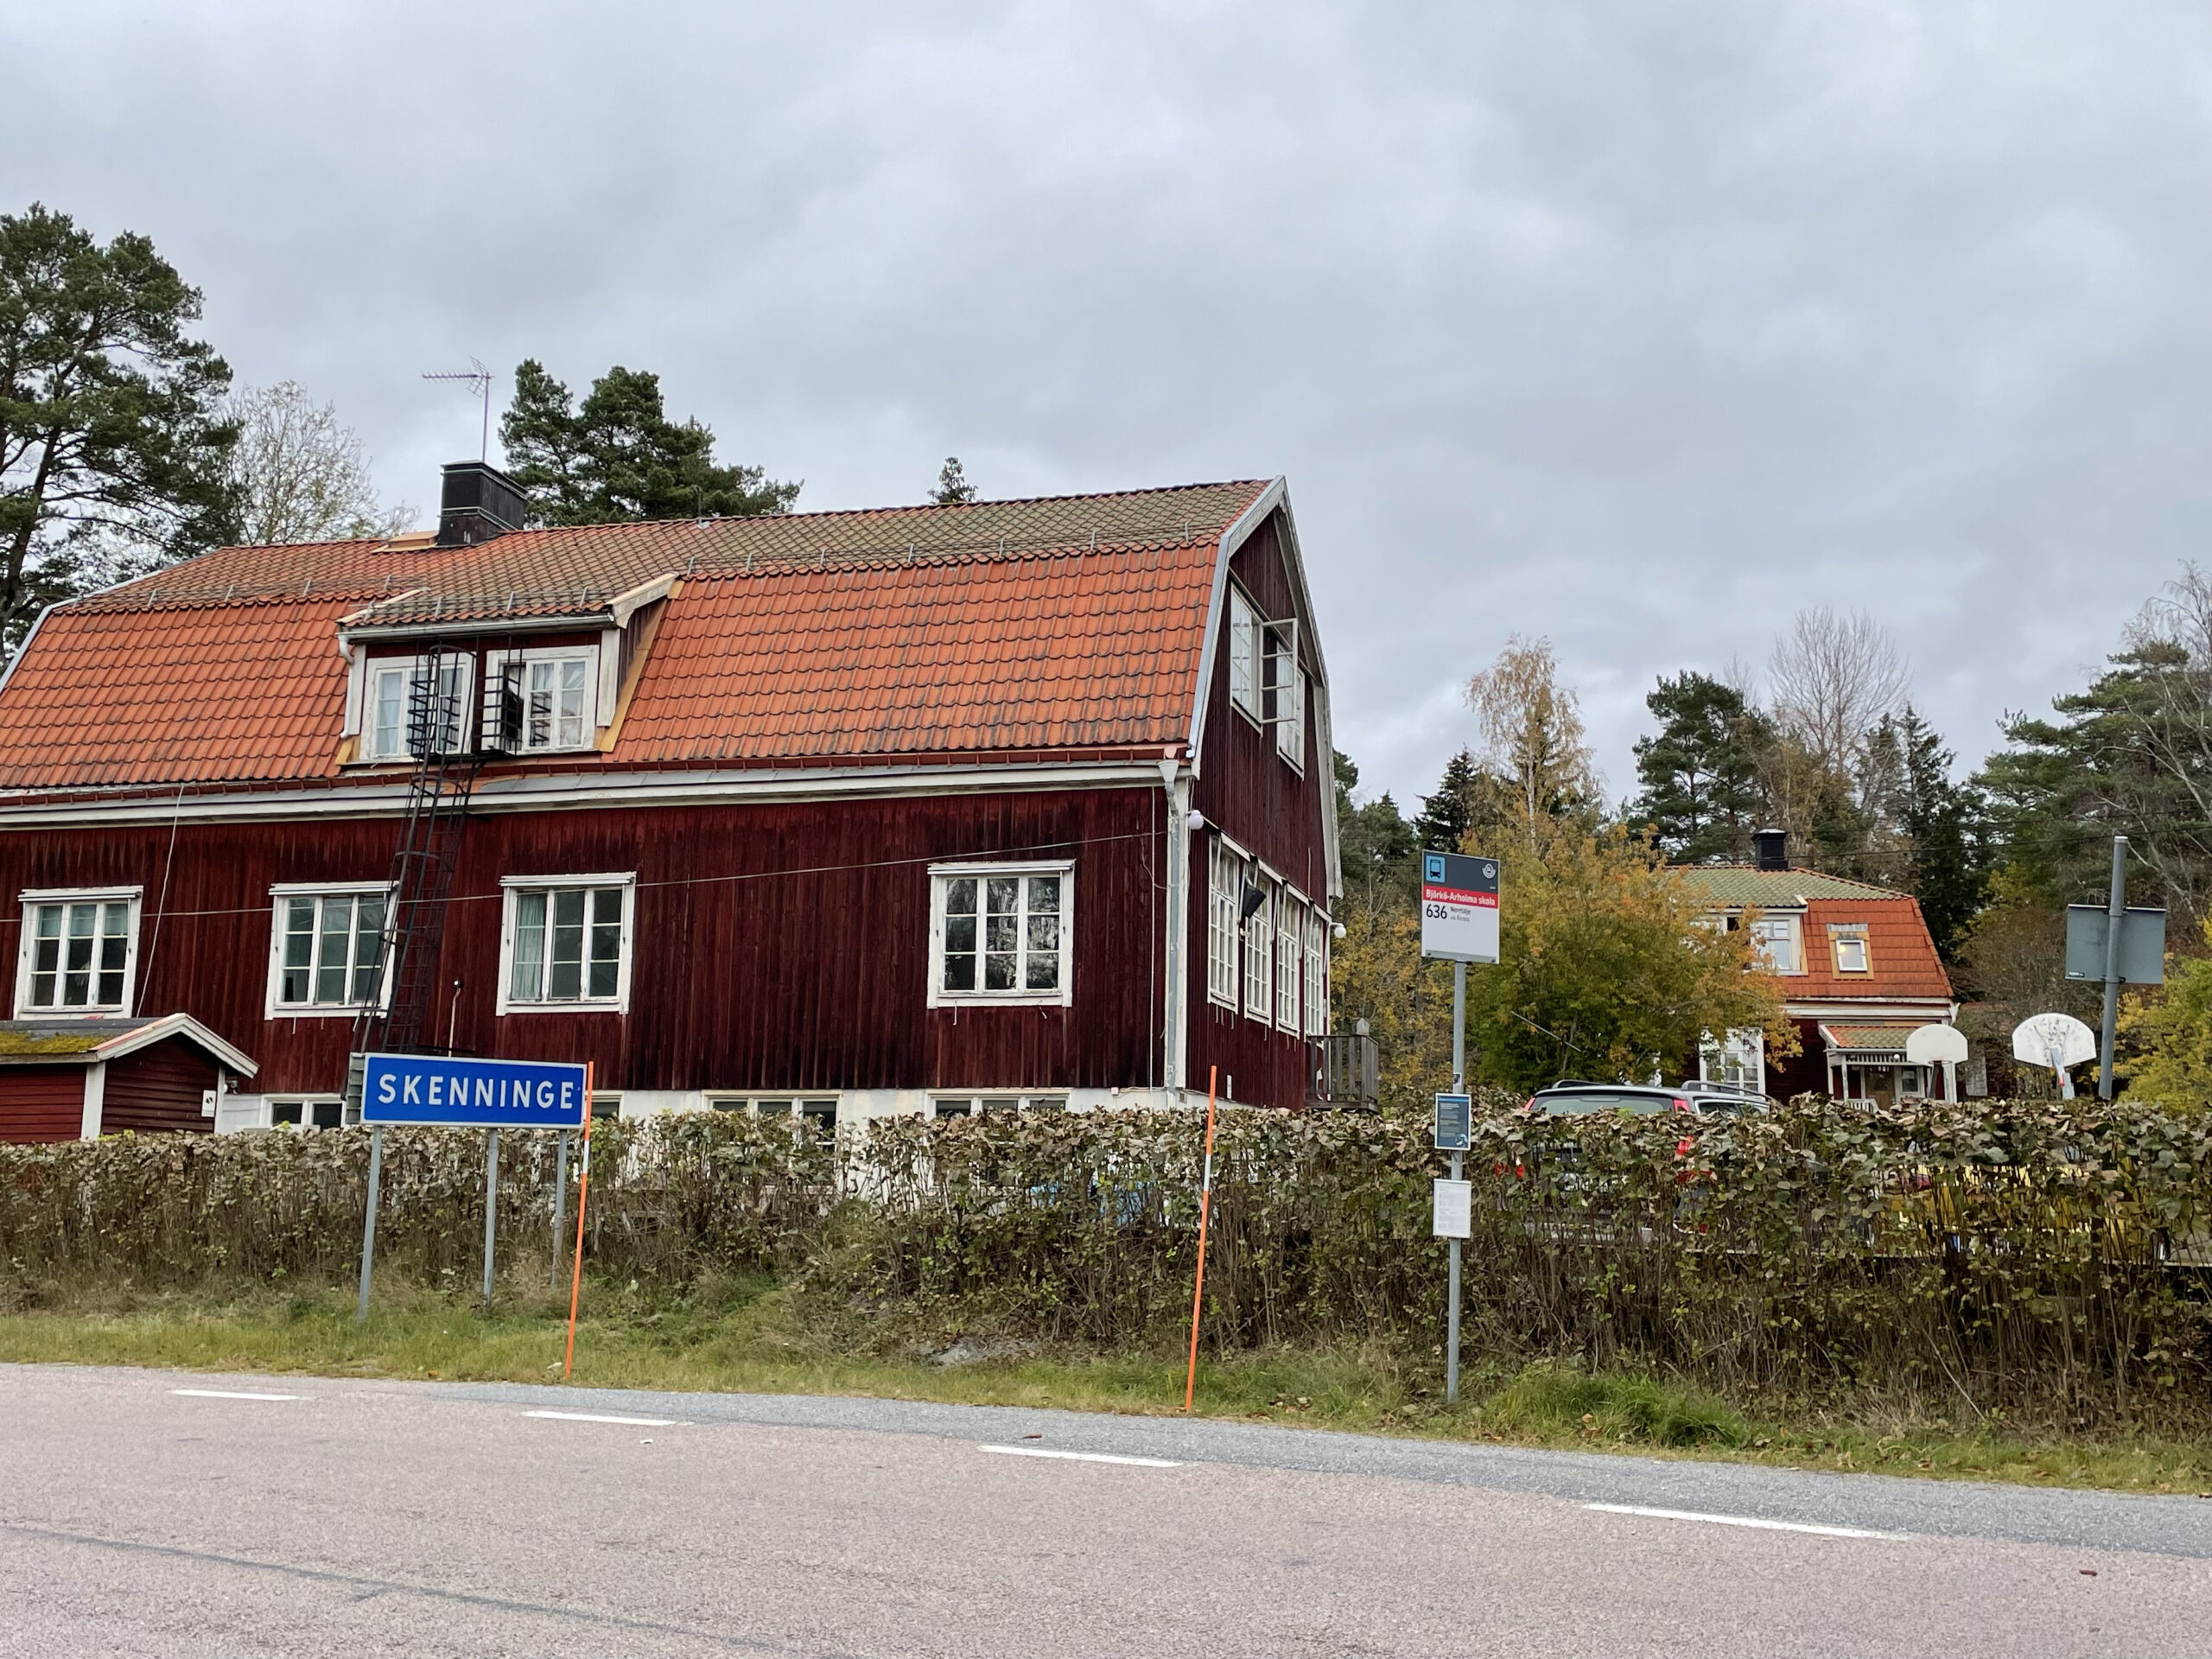 Björkö residency begins